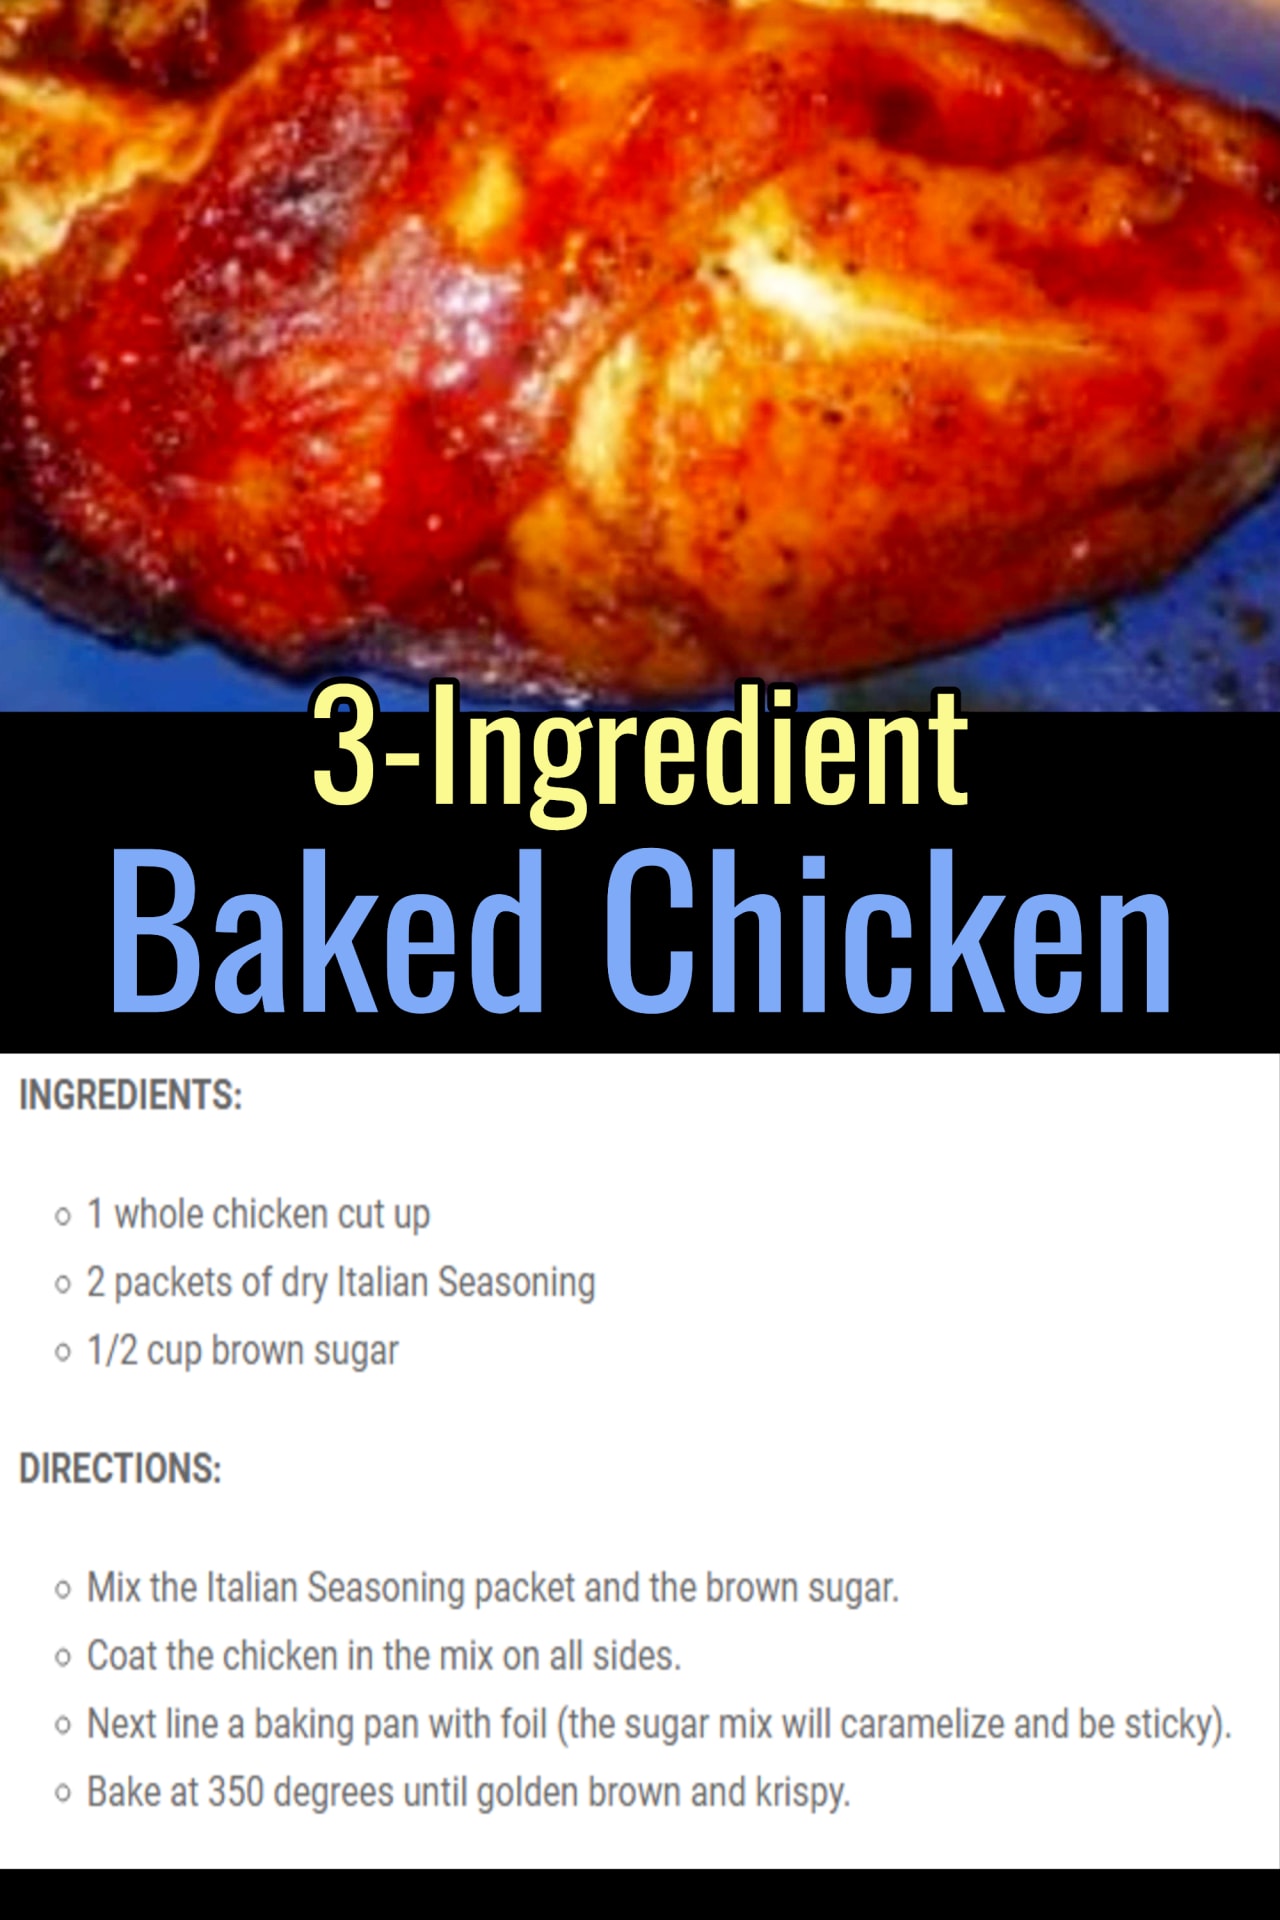 3 ingredient baked chicken recipe